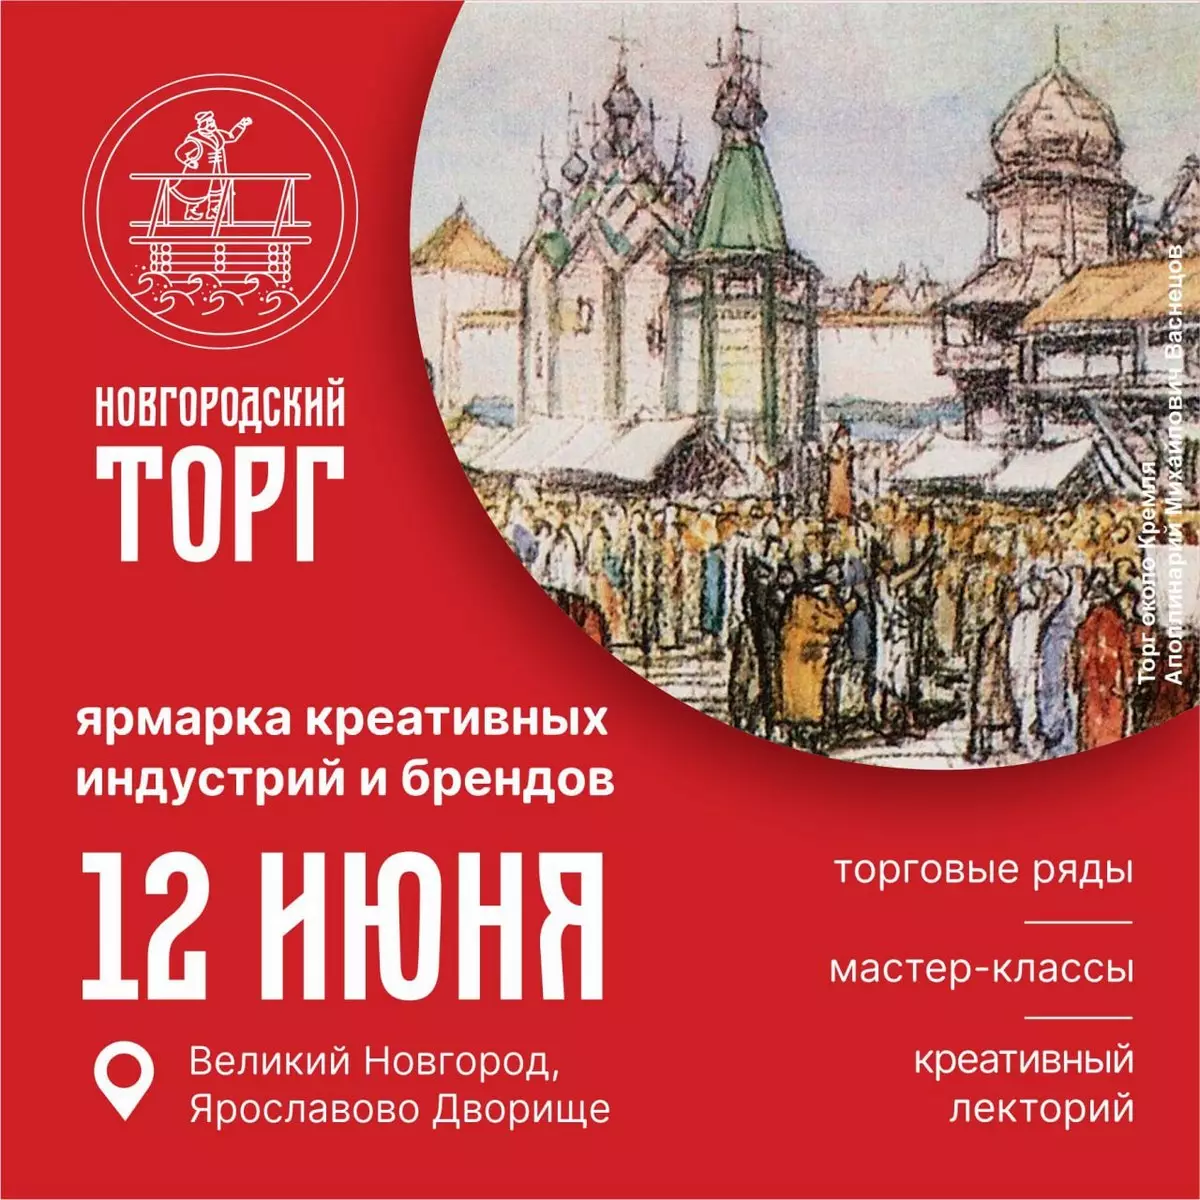 Ярмарка начнёт работать в 10:00 12 июня на Ярославовом дворище.